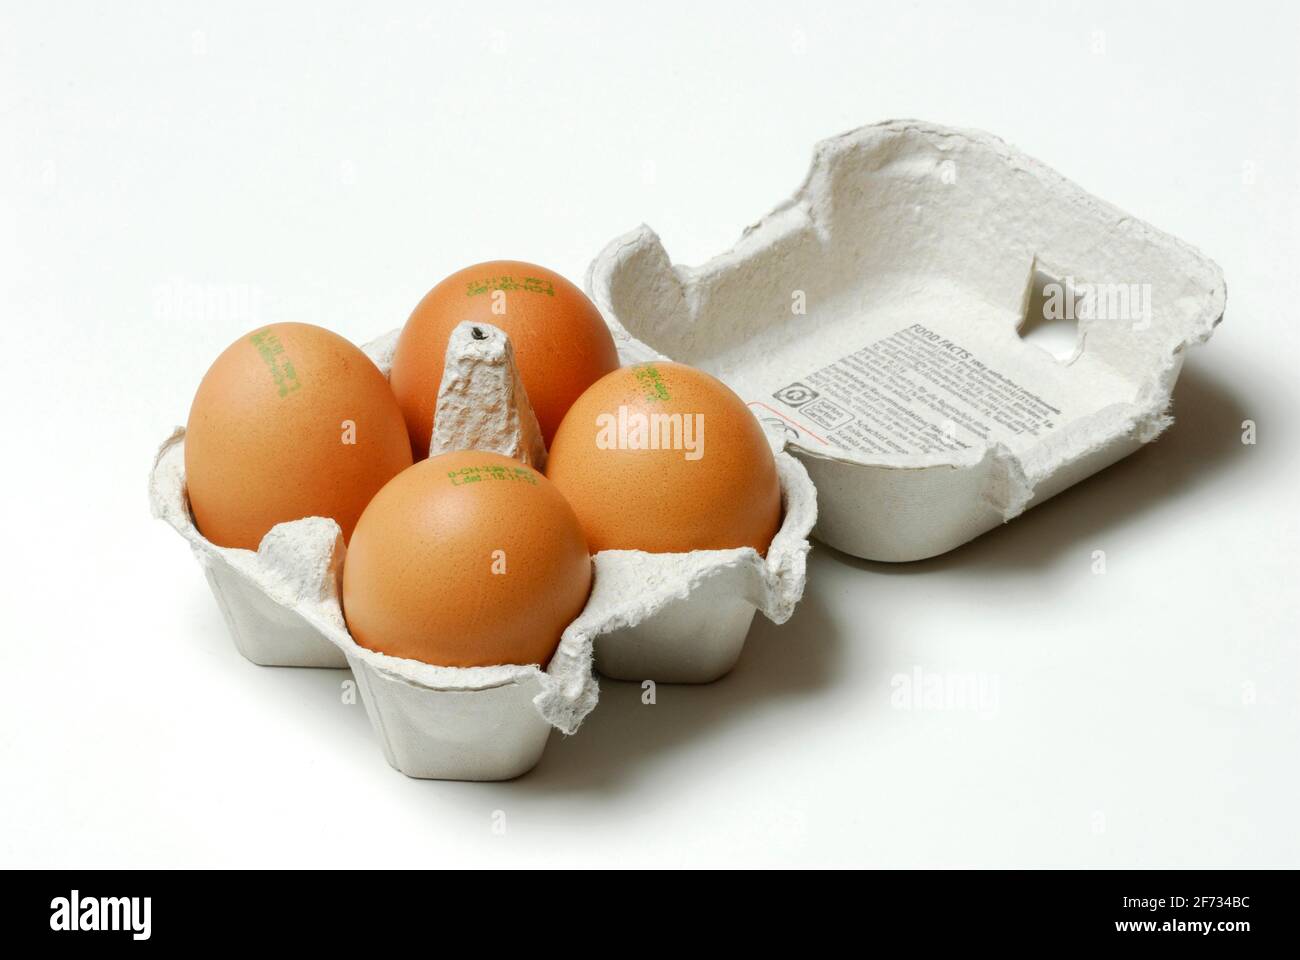 Uova di gallina, uova di gallina, uova di gallina, timbro di origine, data di deposizione, organico Foto Stock